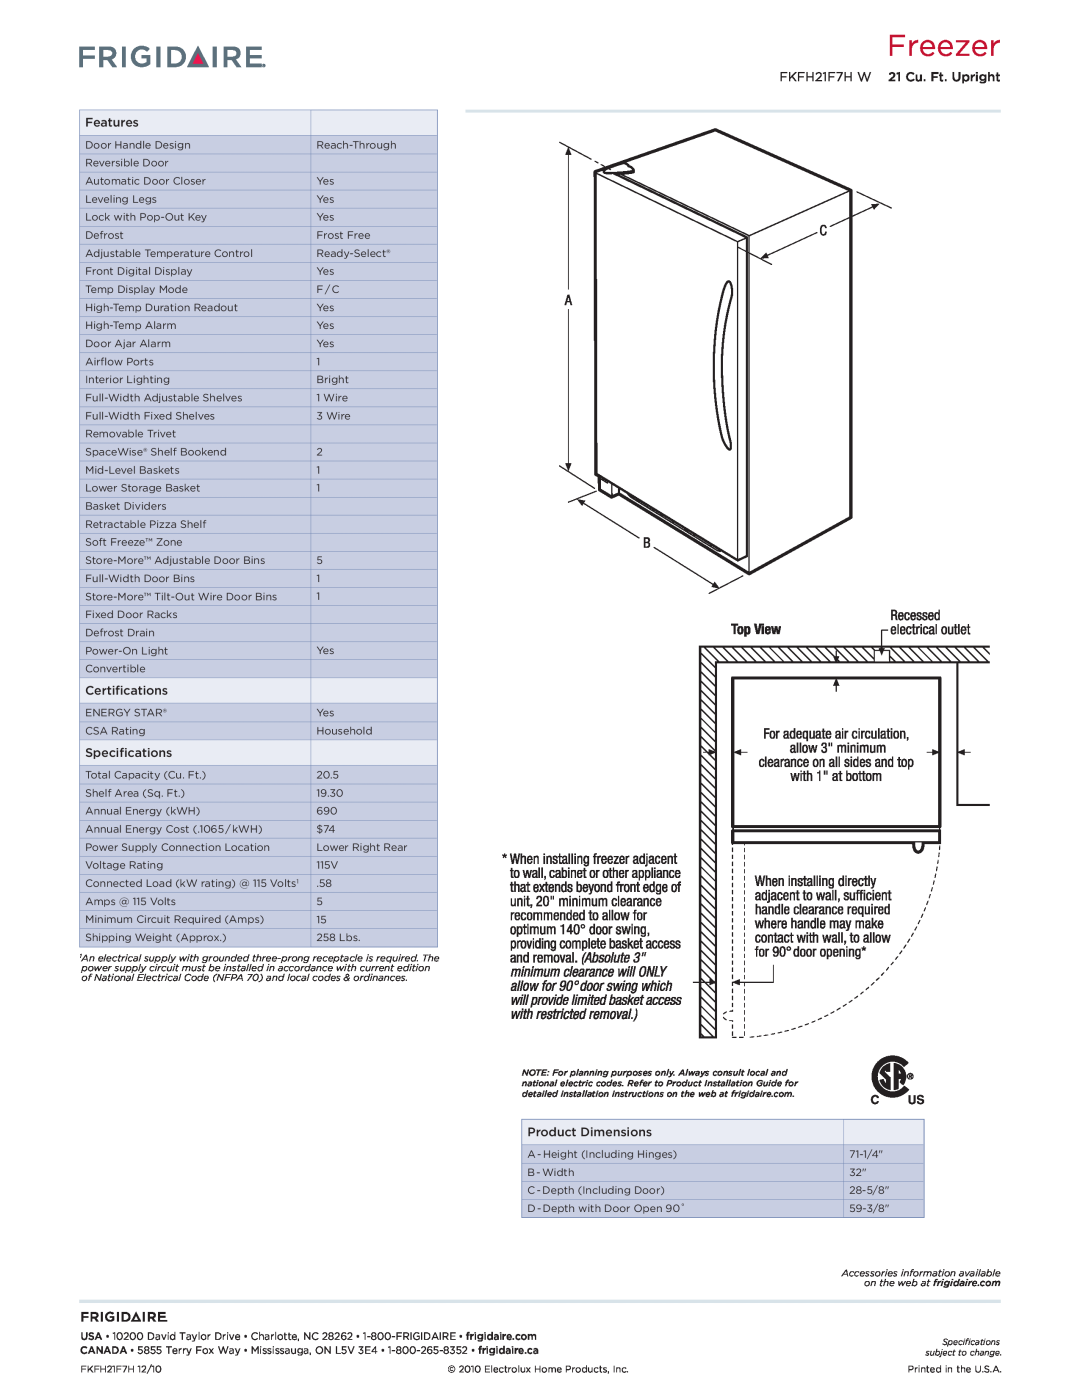 Frigidaire FKFH21F7HW dimensions Freezer, FKFH21F7H W 21 Cu. Ft. Upright 